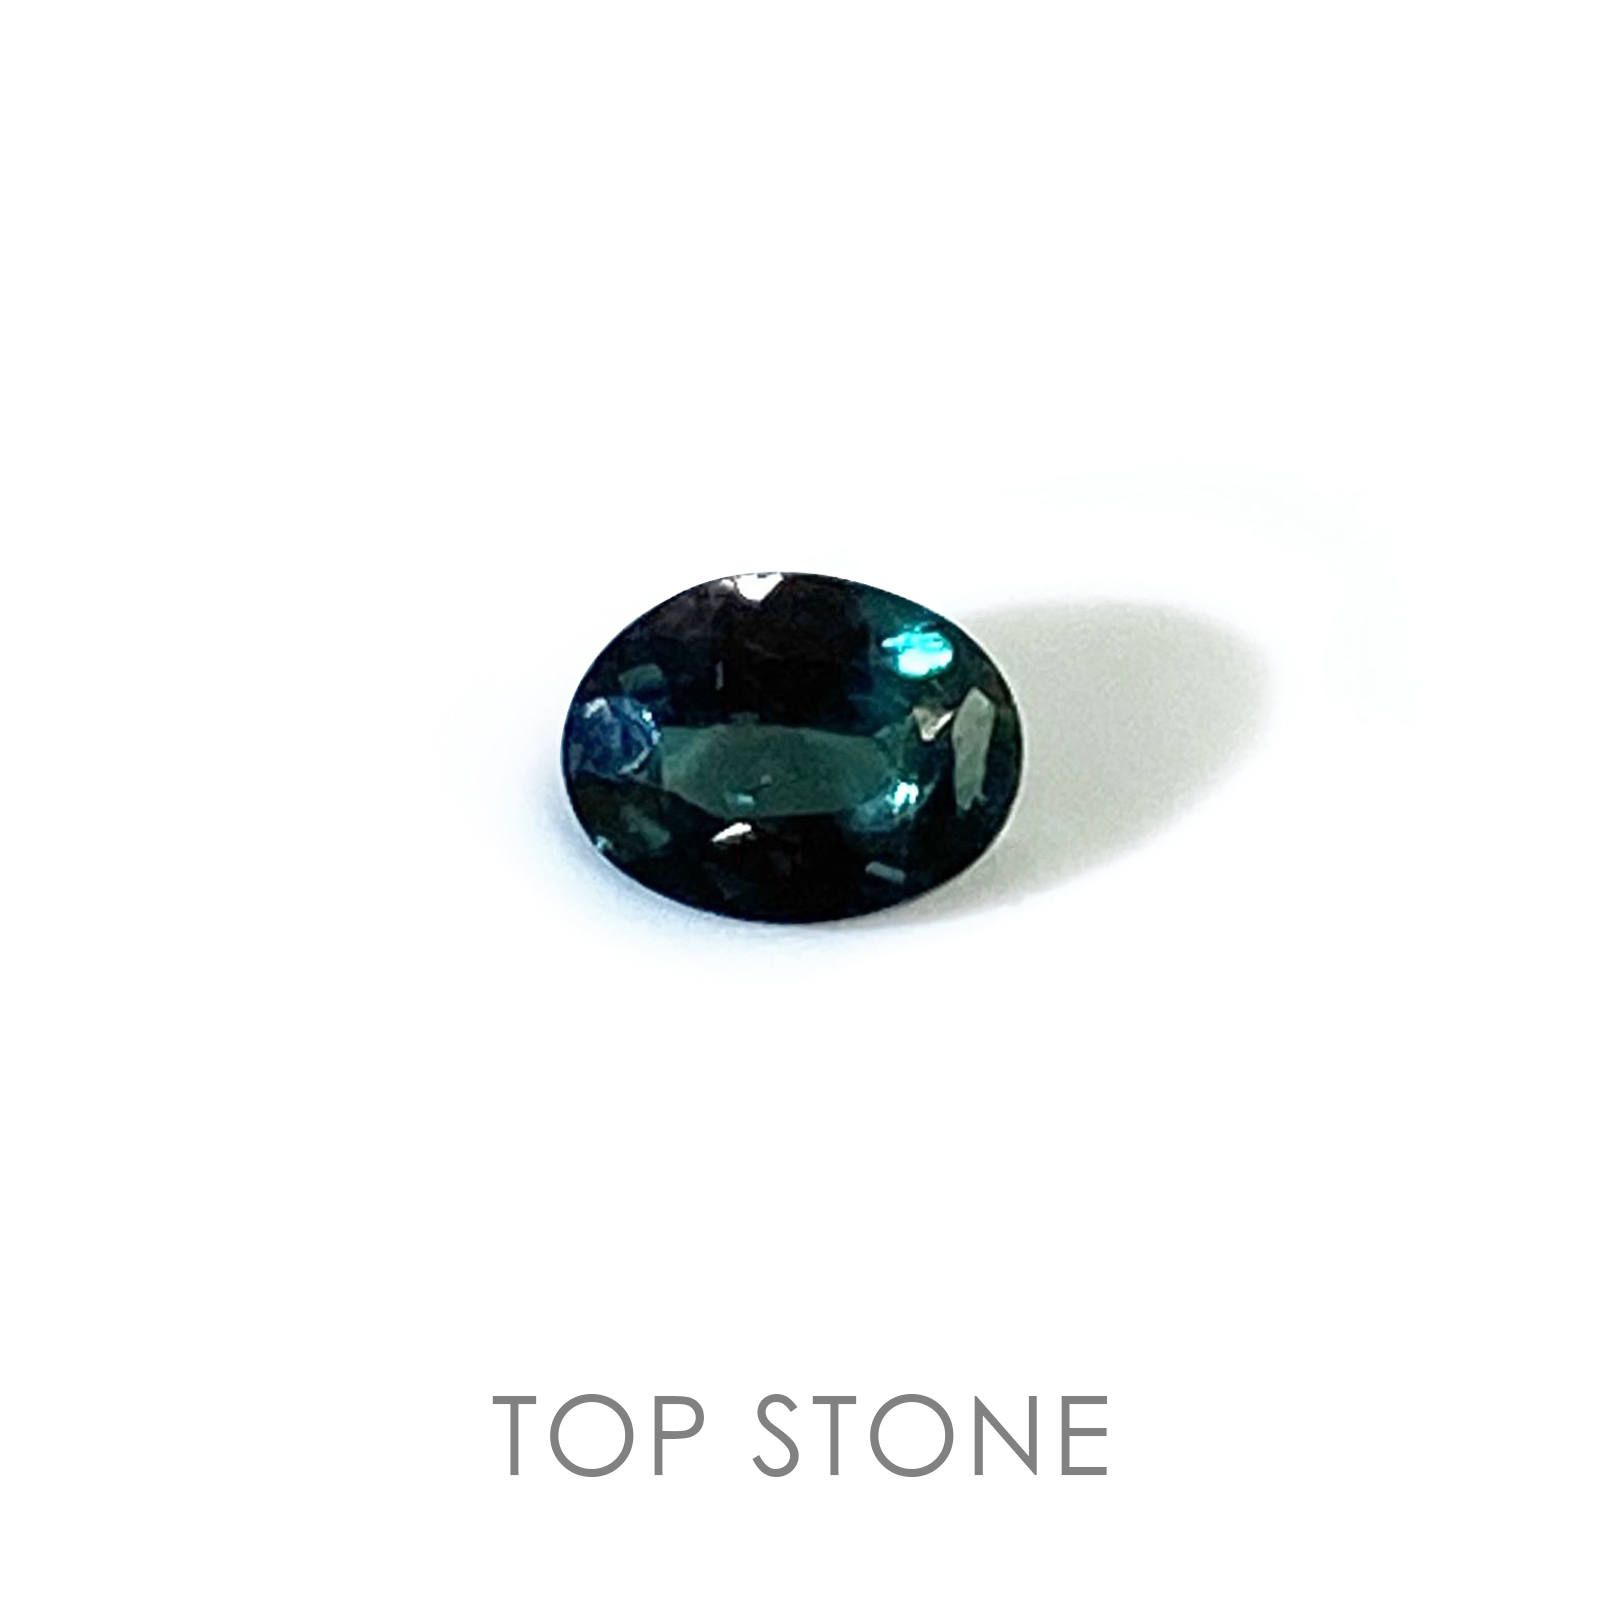 アレキサンドライト 宝石名アレキサンドライト ブラジル産 0 24ct 識別済 4 7 3 6mm前後 Top Stone トップストーン